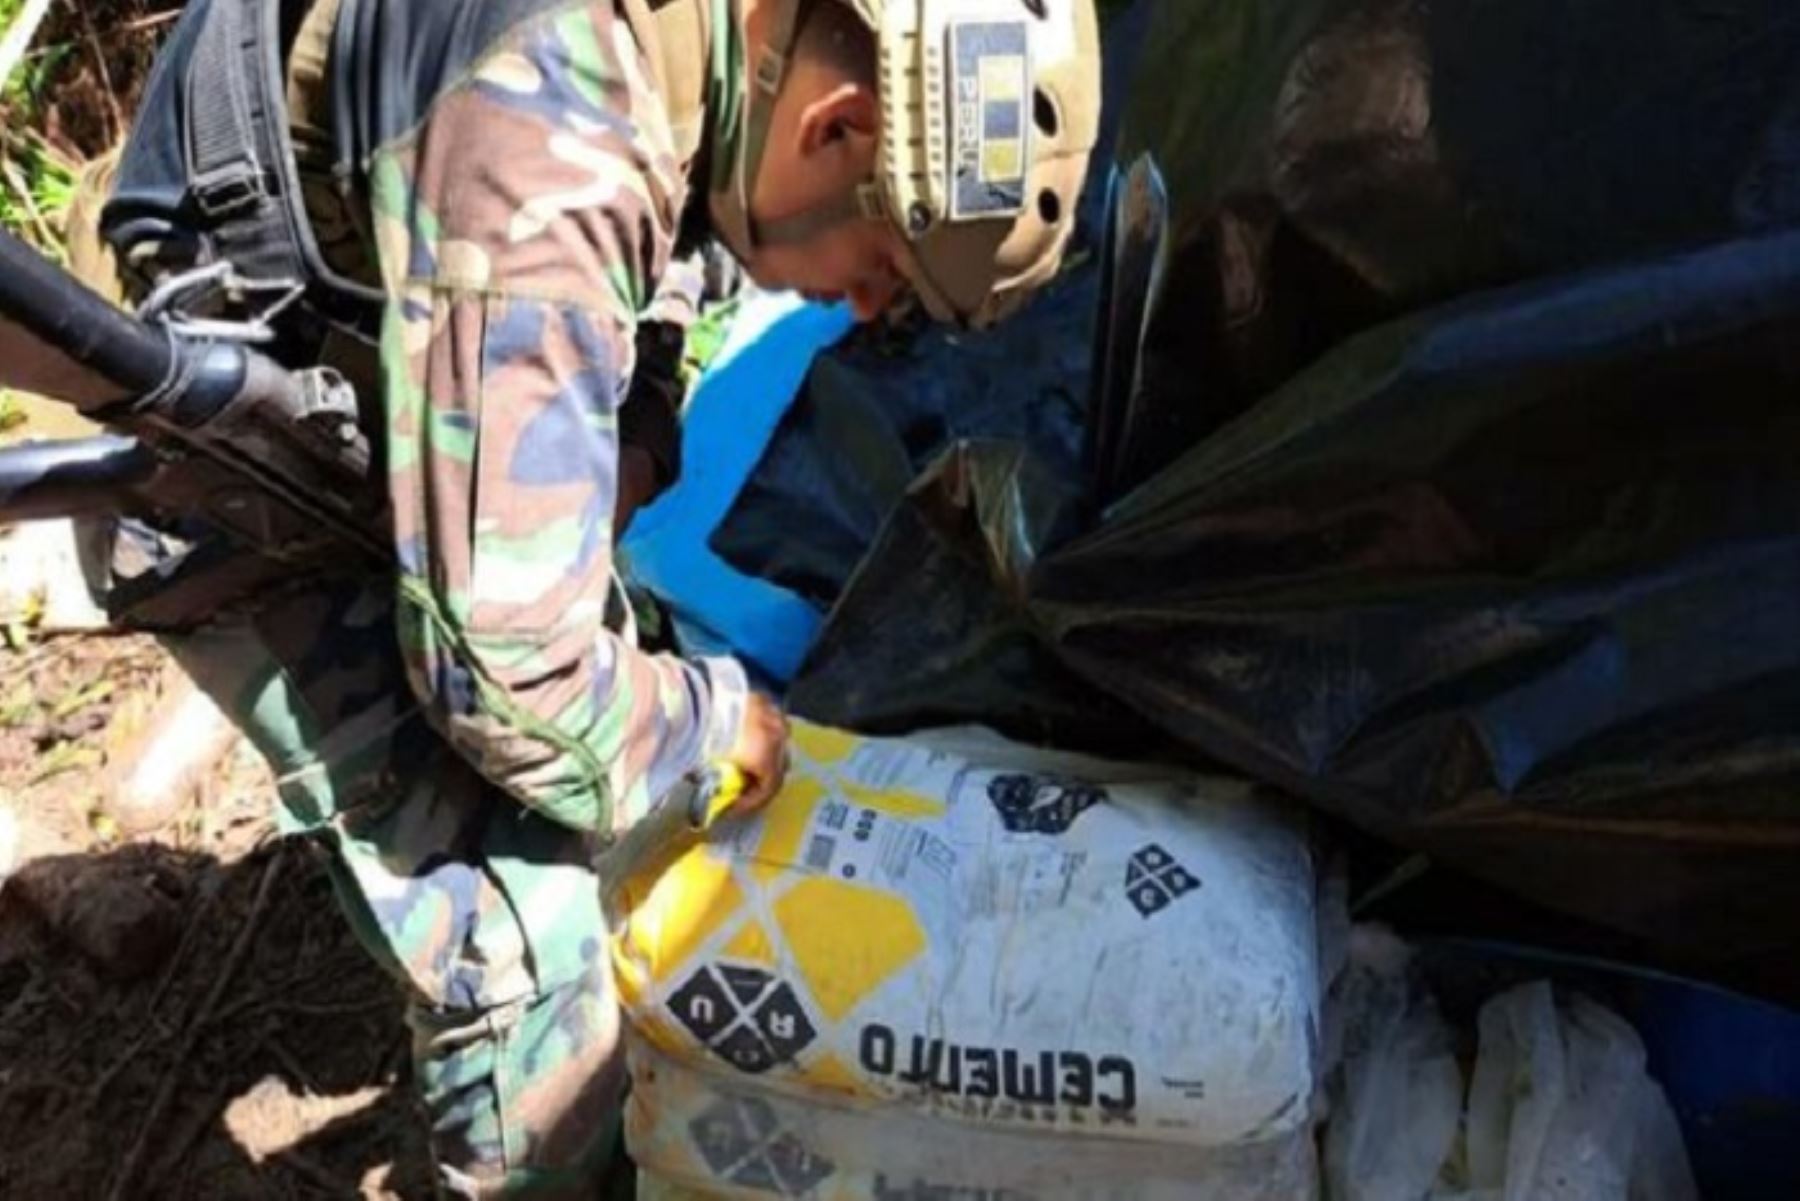 Fuerzas del orden hallaron 9,000 kilos de hoja de coca en proceso de maceración, 4,745 kilos de insumos químicos y otros productos.